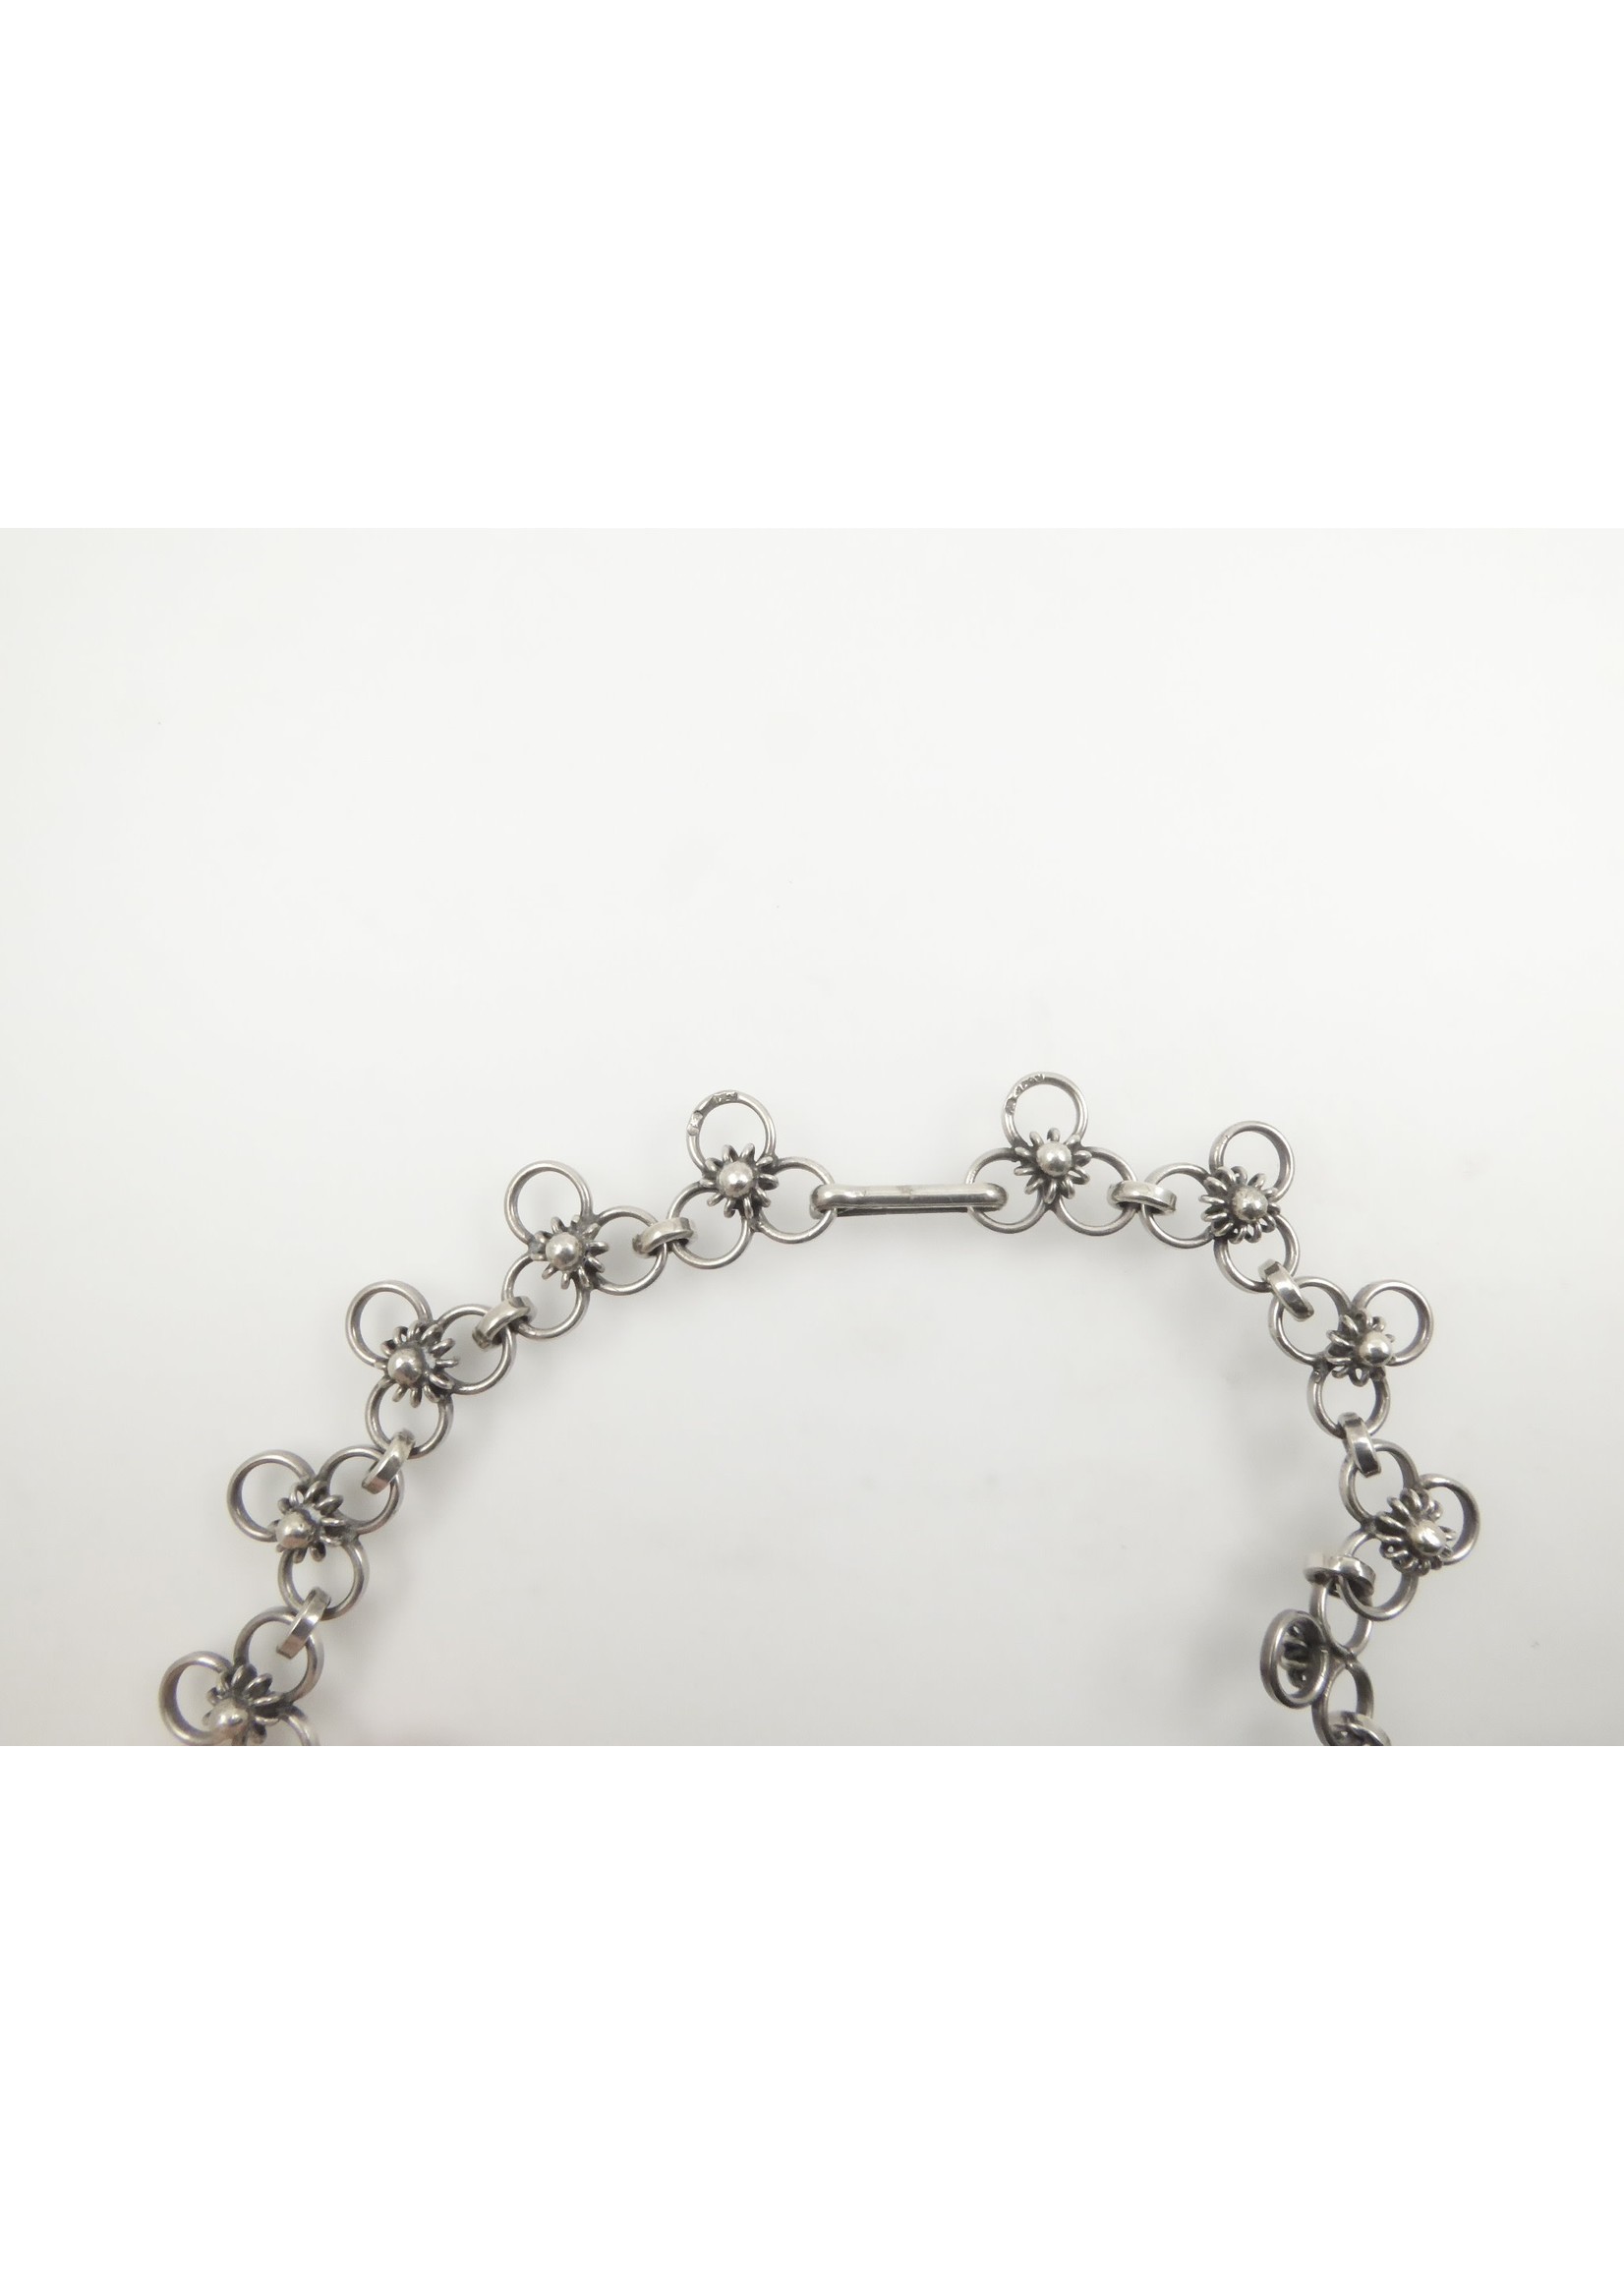 Lisa Kramer Vintage Jewelry Silver Floral Fringe Necklace